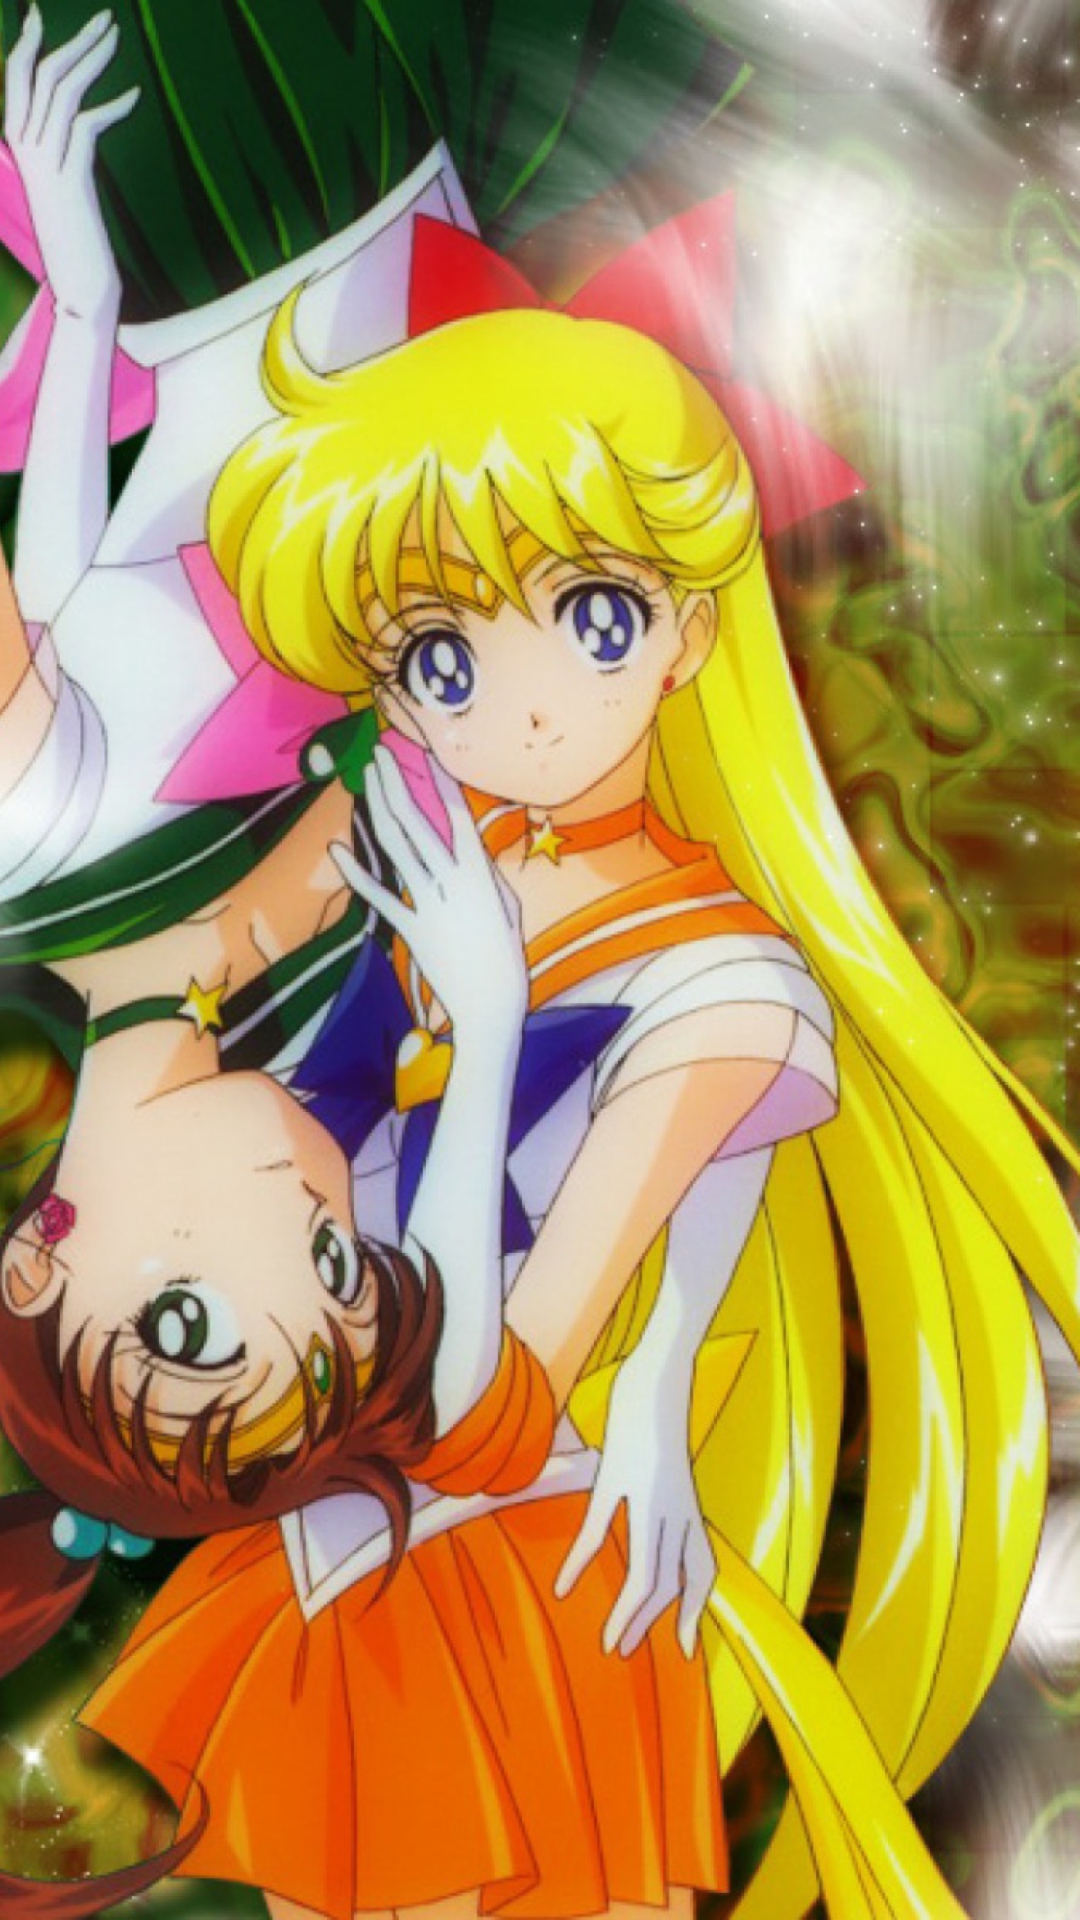 Sailormoon Girls wallpaper 1080x1920